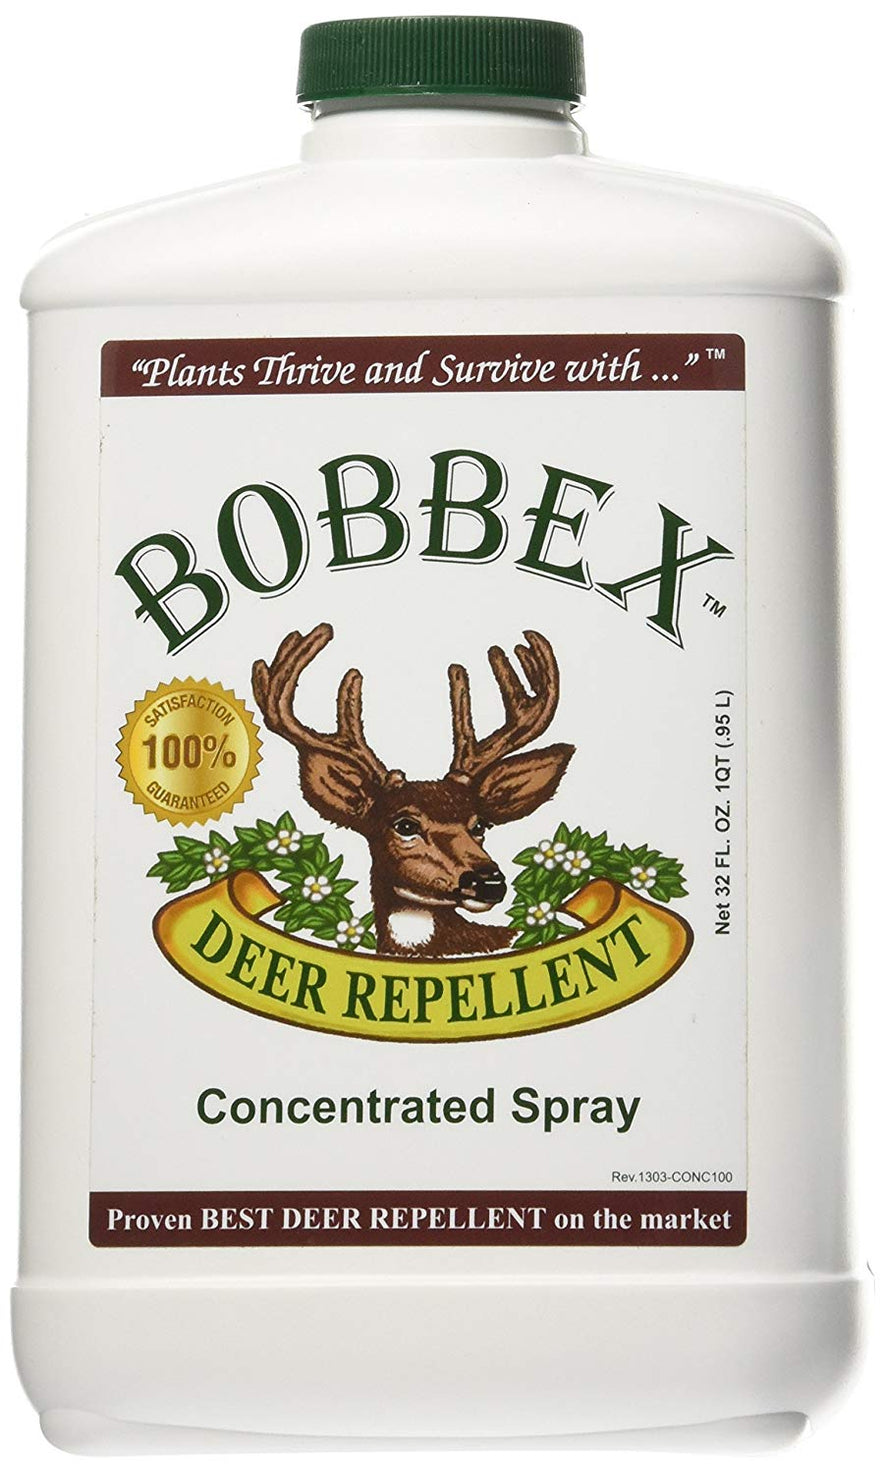 Bobbex Deer Repellent, 1 QT Concentrate